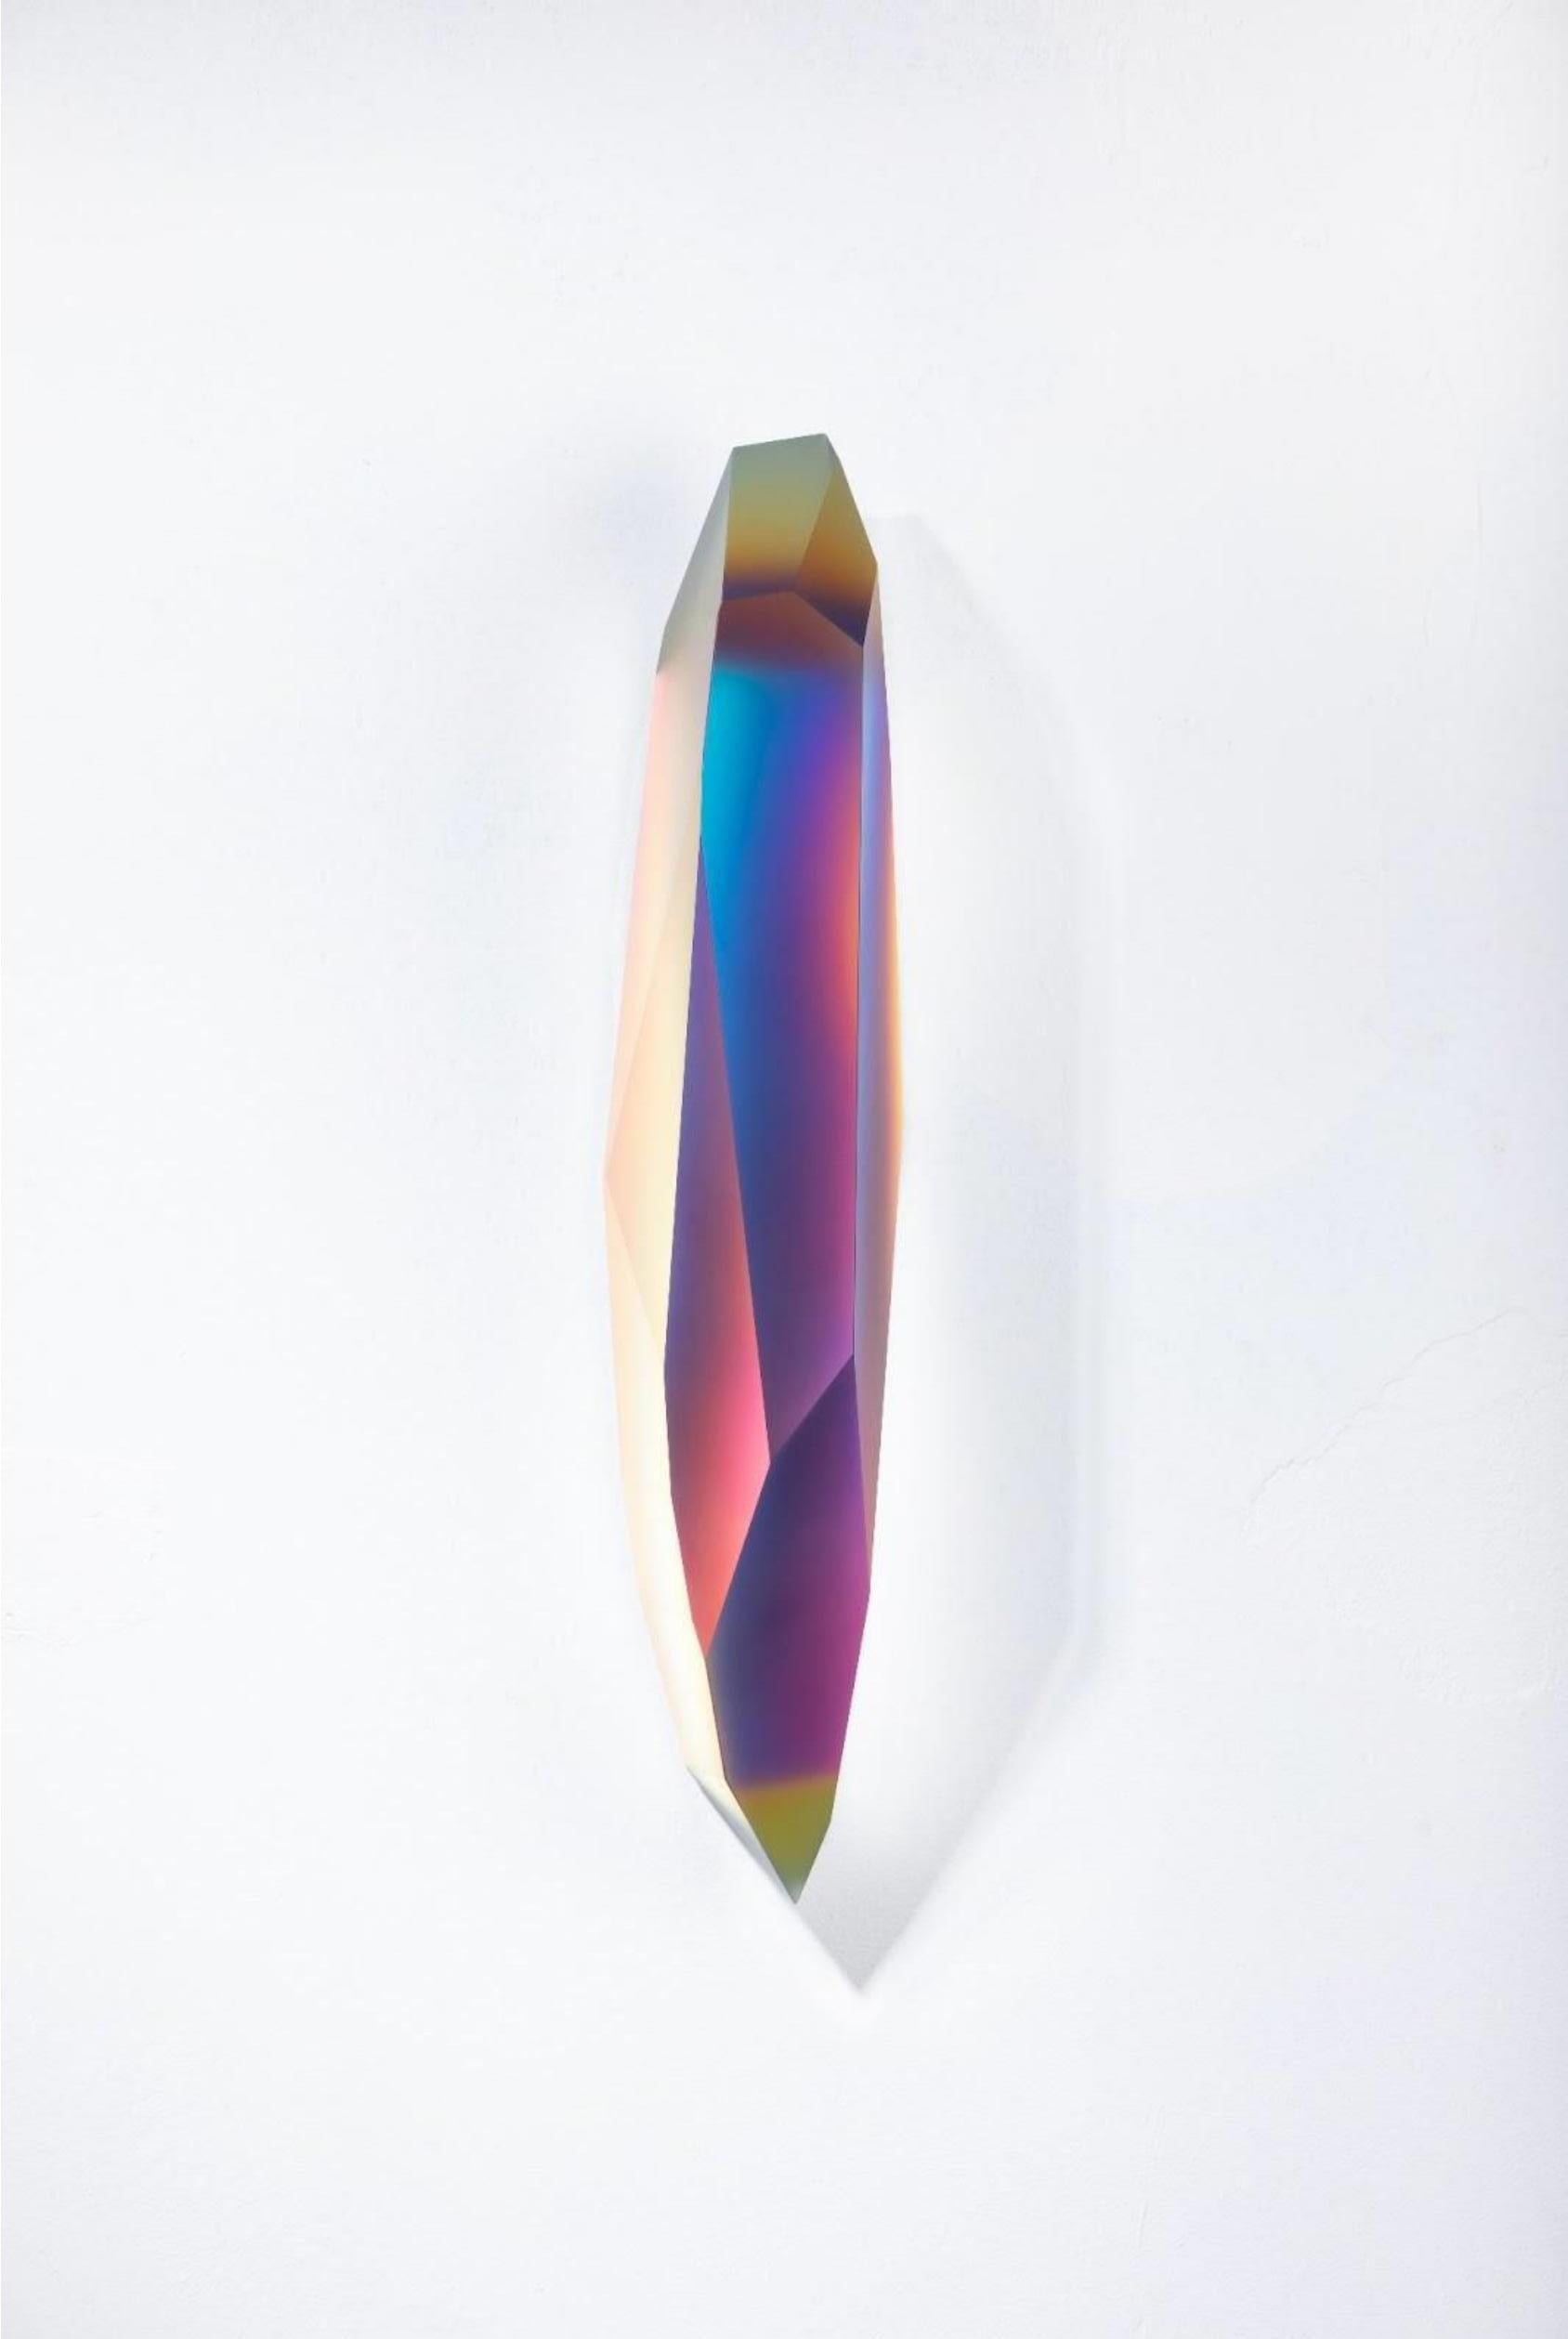 Pretty Mirage 0204 par Lukas Novak
Dimensions : L 16 x D 16 x H 63 cm
MATERIAL : Verre taillé, cristal, dégradé de couleurs

La série Pretty Mirage est composée de cristaux muraux. Il s'agit d'une composition unique de coupes dans le verre et d'un